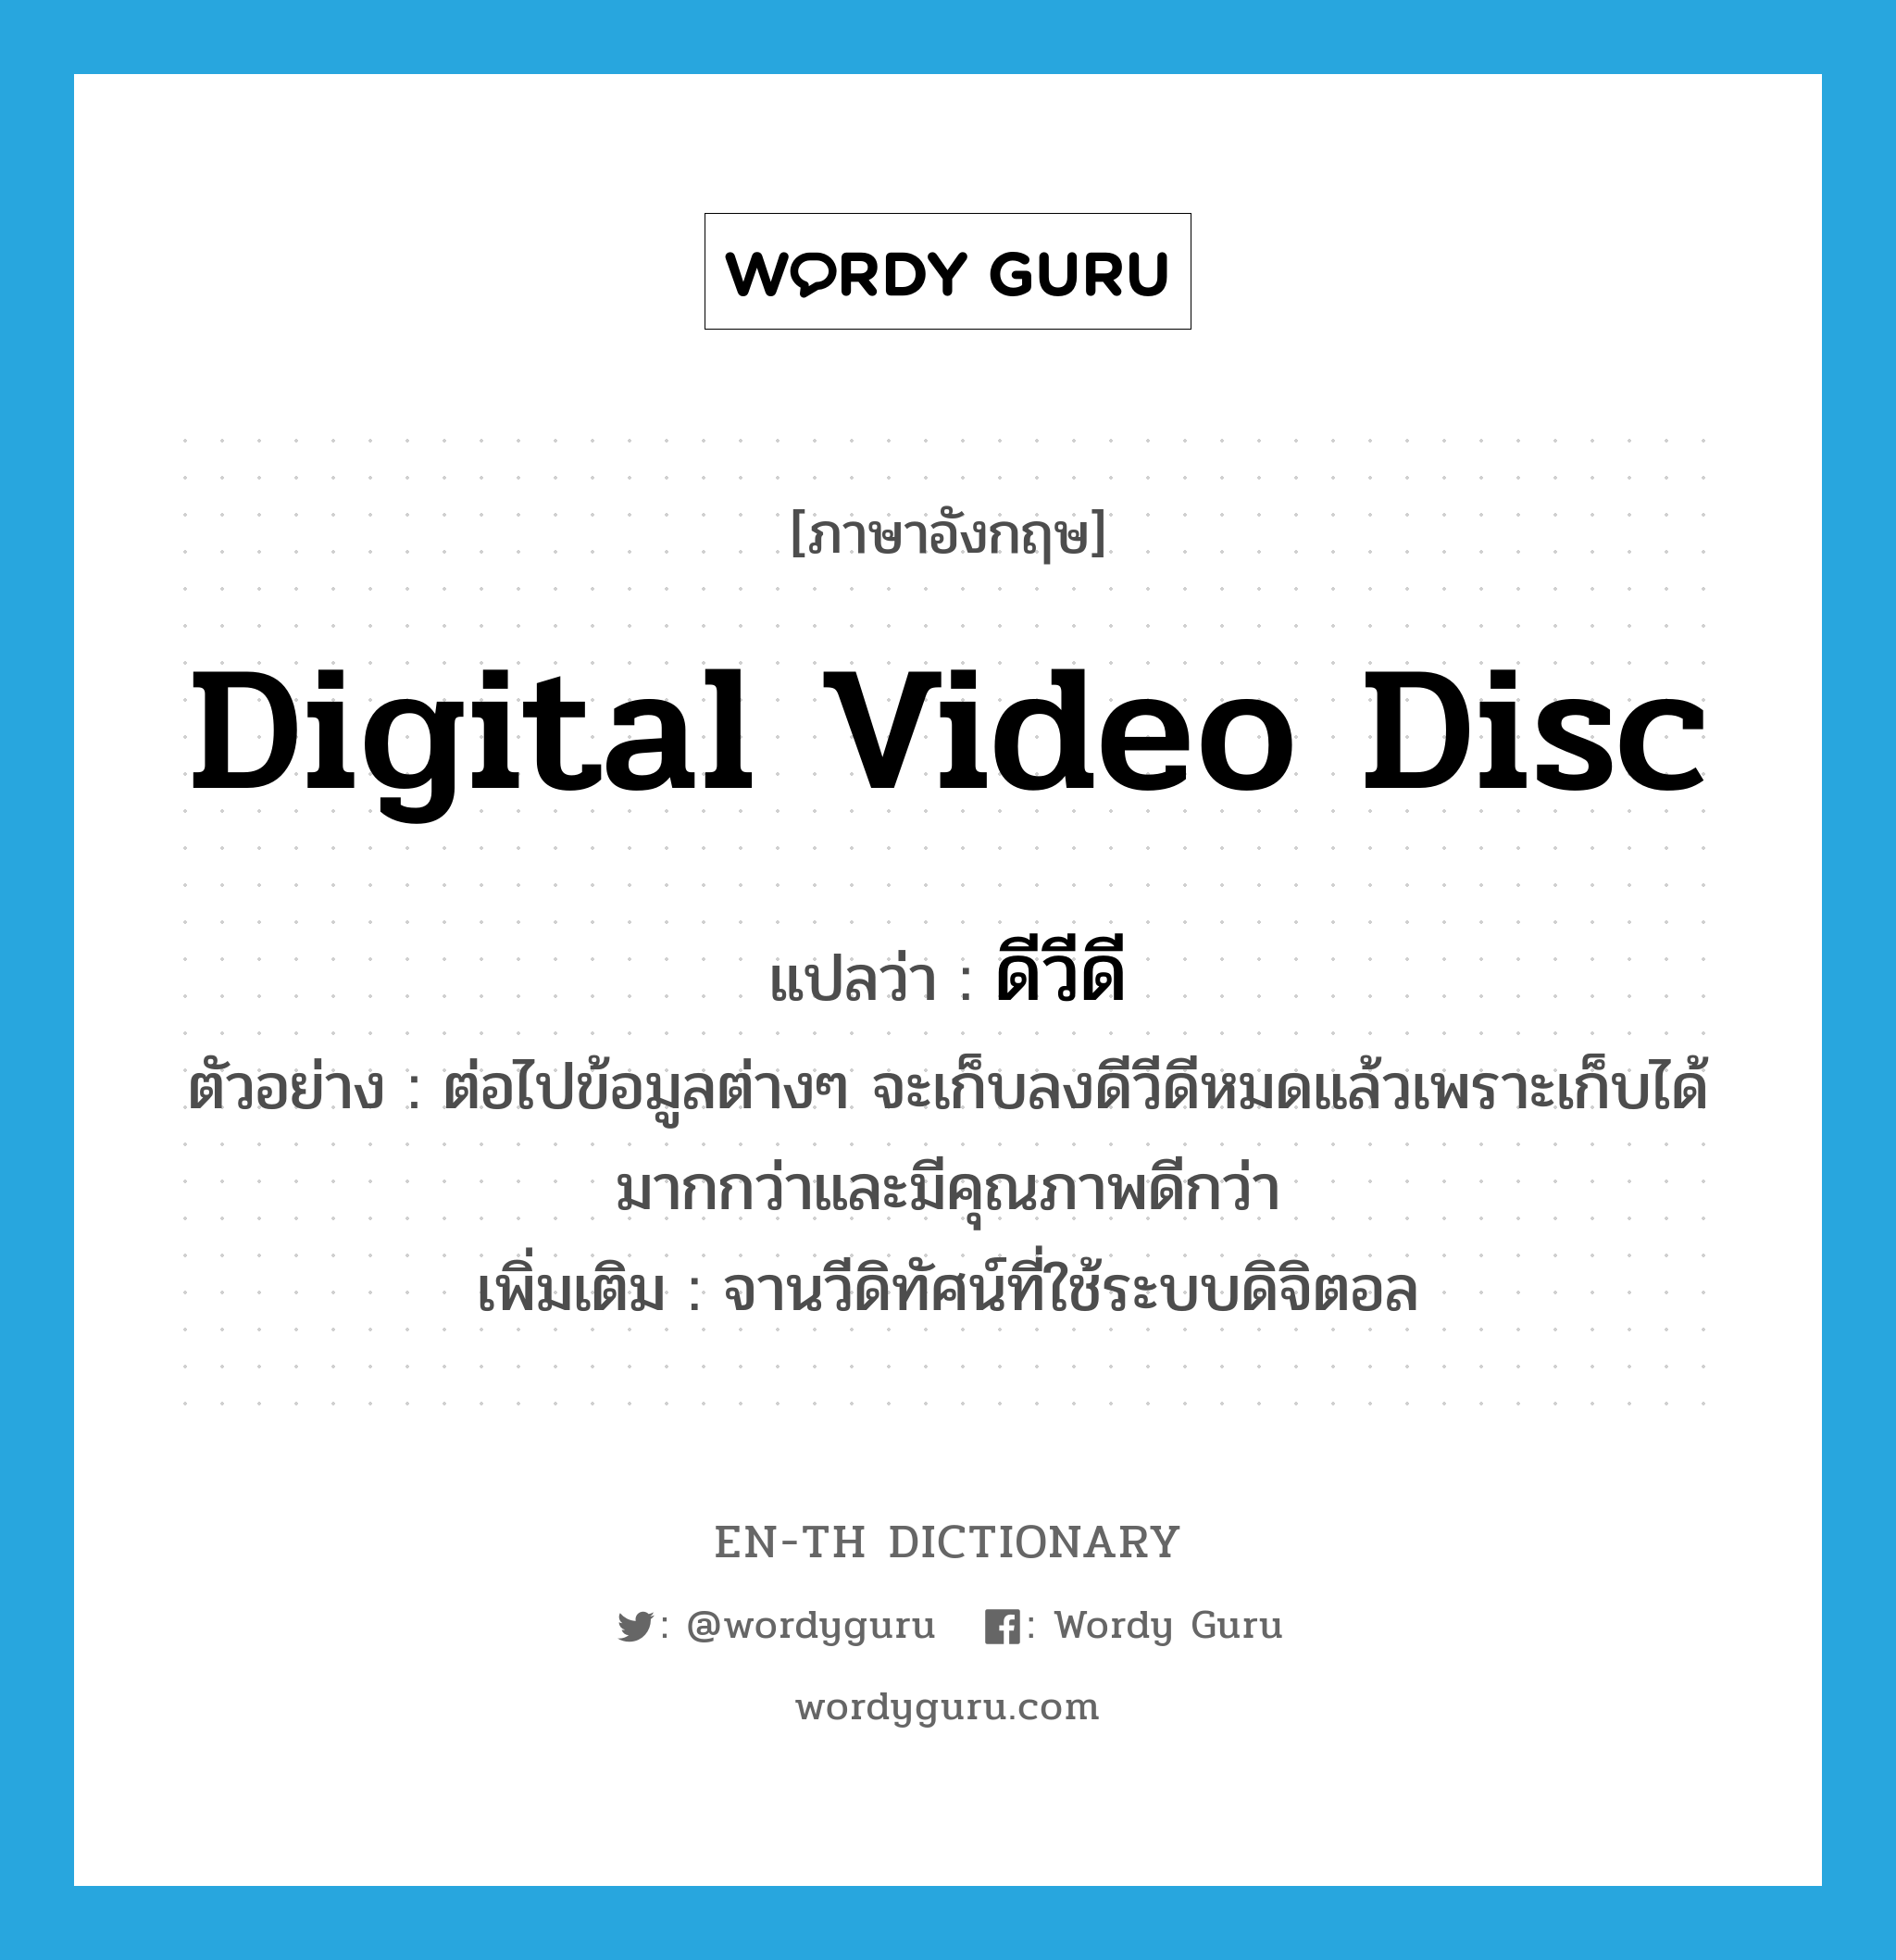 ดีวีดี ภาษาอังกฤษ?, คำศัพท์ภาษาอังกฤษ ดีวีดี แปลว่า digital video disc ประเภท N ตัวอย่าง ต่อไปข้อมูลต่างๆ จะเก็บลงดีวีดีหมดแล้วเพราะเก็บได้มากกว่าและมีคุณภาพดีกว่า เพิ่มเติม จานวีดิทัศน์ที่ใช้ระบบดิจิตอล หมวด N